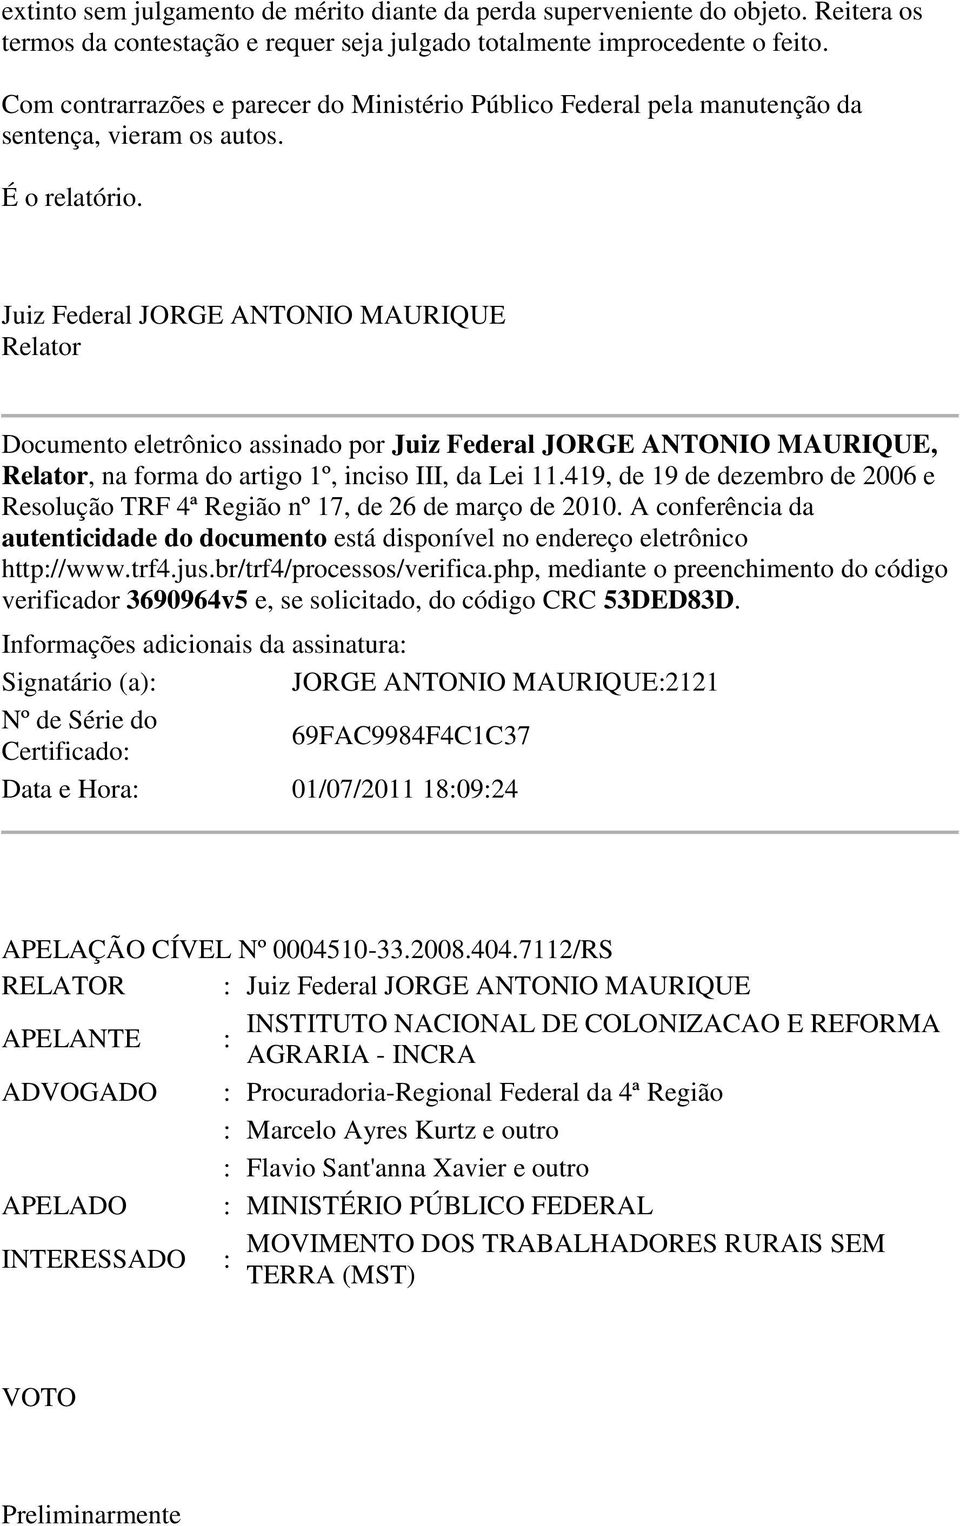 Juiz Federal JORGE ANTONIO MAURIQUE Relator Documento eletrônico assinado por Juiz Federal JORGE ANTONIO MAURIQUE, Relator, na forma do artigo 1º, inciso III, da Lei 11.